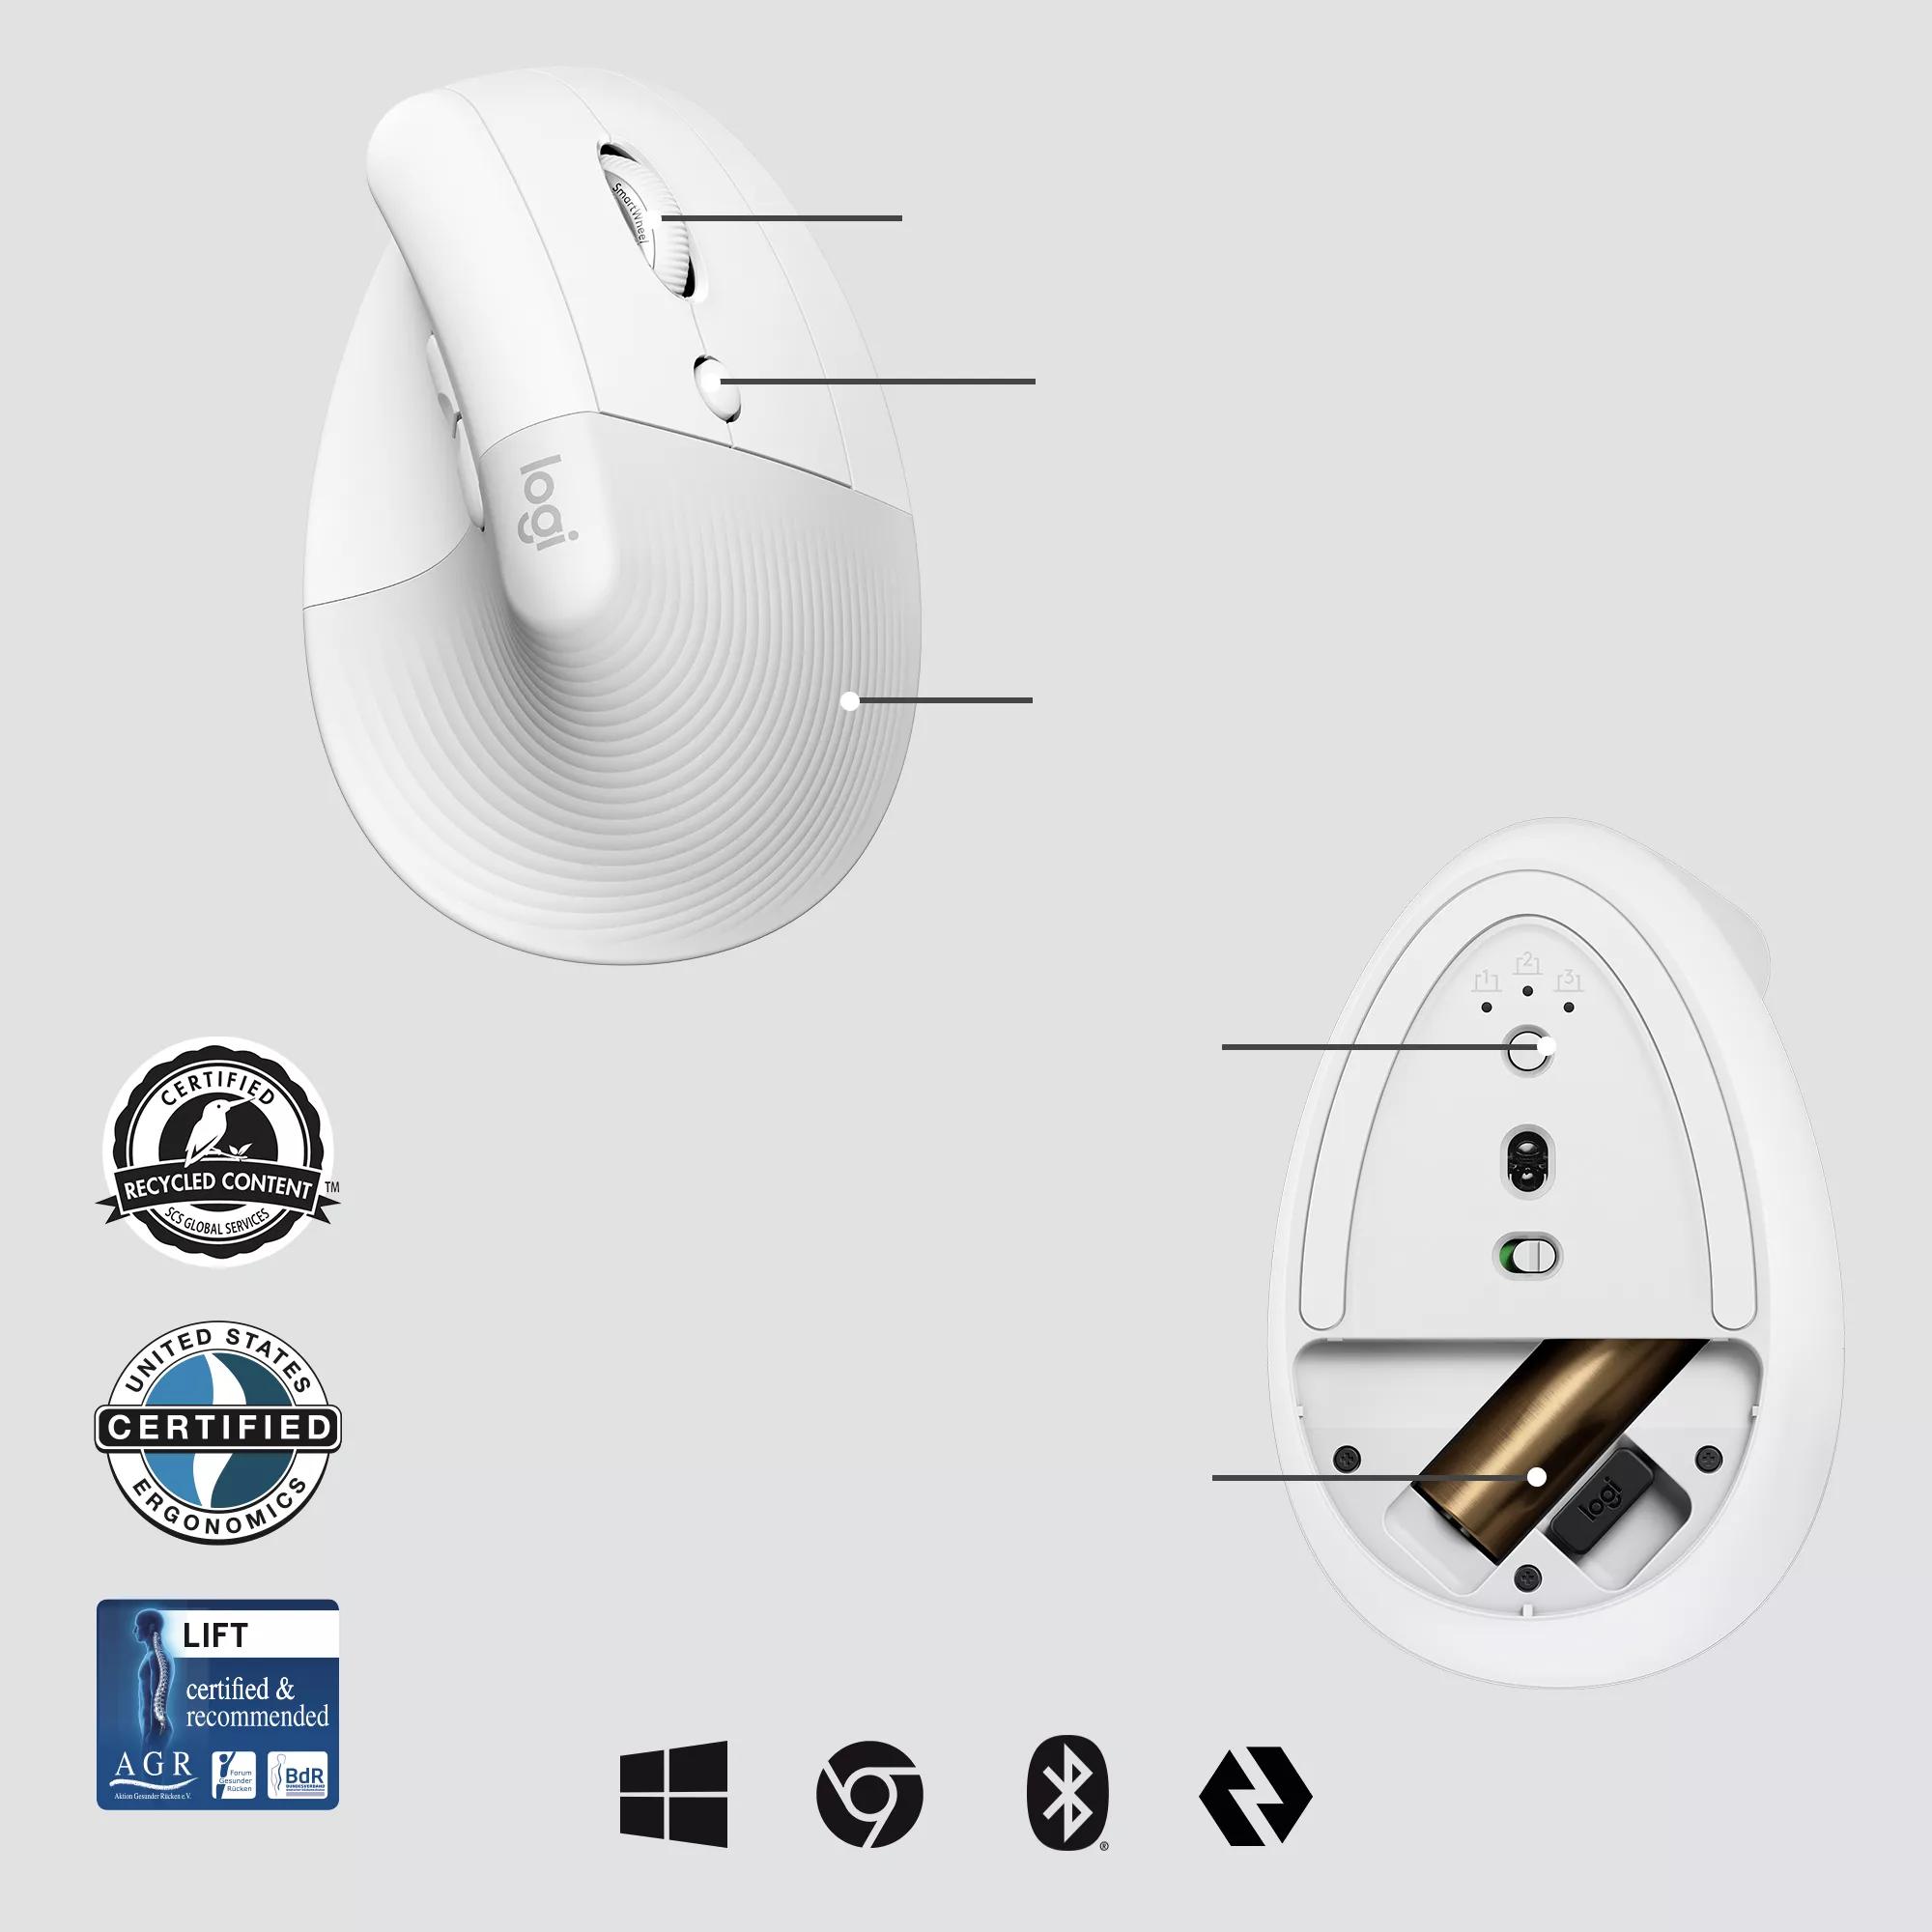 Vente LOGITECH Lift for Business Vertical mouse ergonomic 6 Logitech au meilleur prix - visuel 6